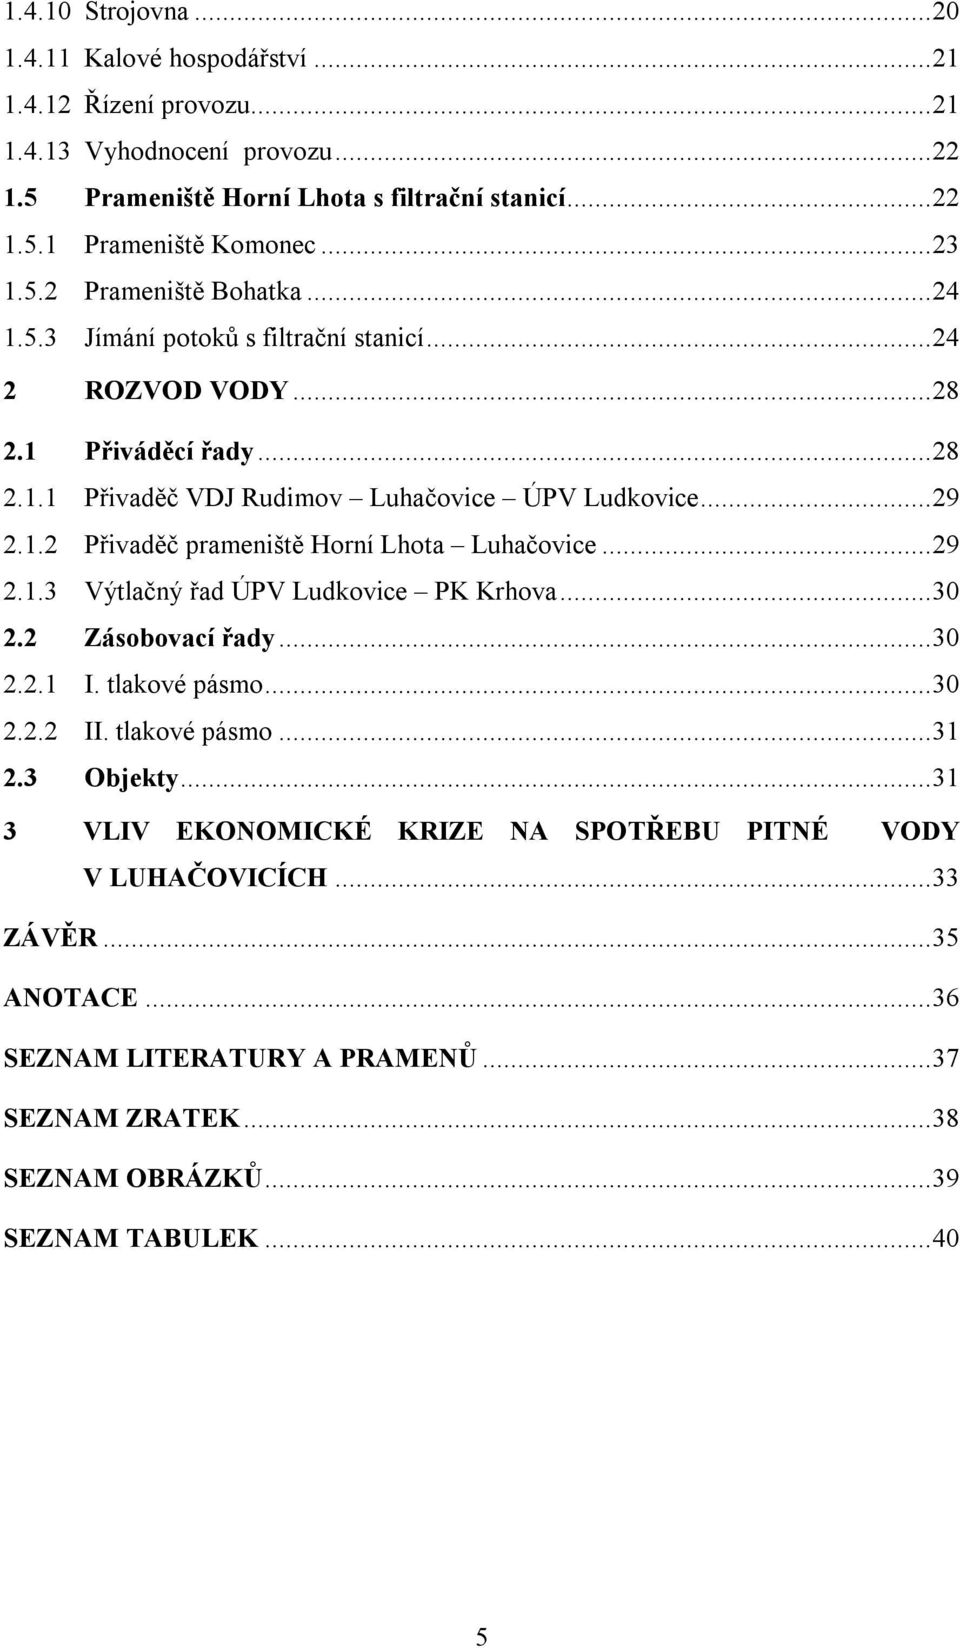 ..29 2.1.3 Výtlačný řad ÚPV Ludkovice PK Krhova...30 2.2 Zásobovací řady...30 2.2.1 I. tlakové pásmo...30 2.2.2 II. tlakové pásmo...31 2.3 Objekty.